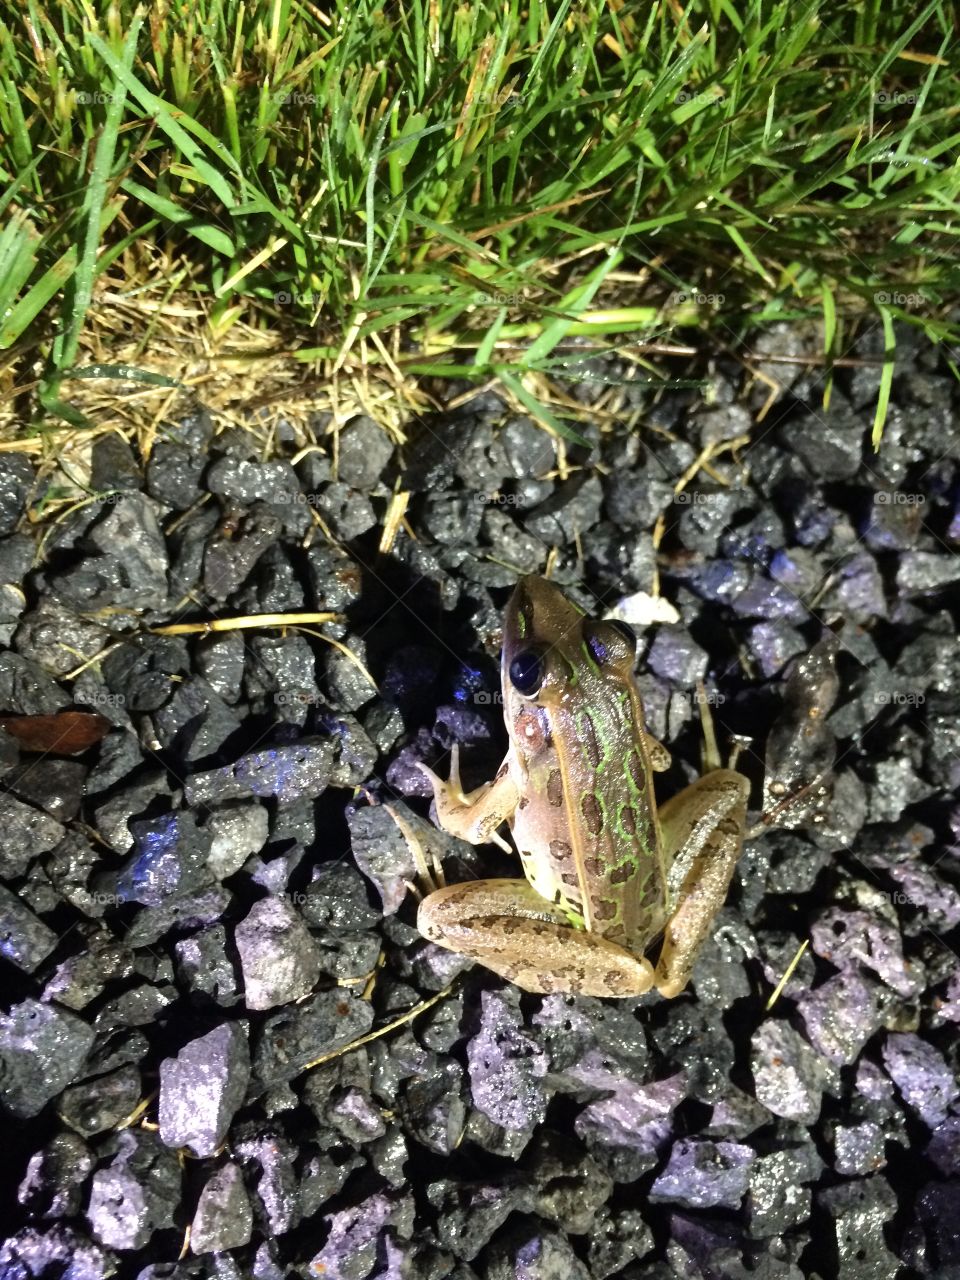 Frog at night.